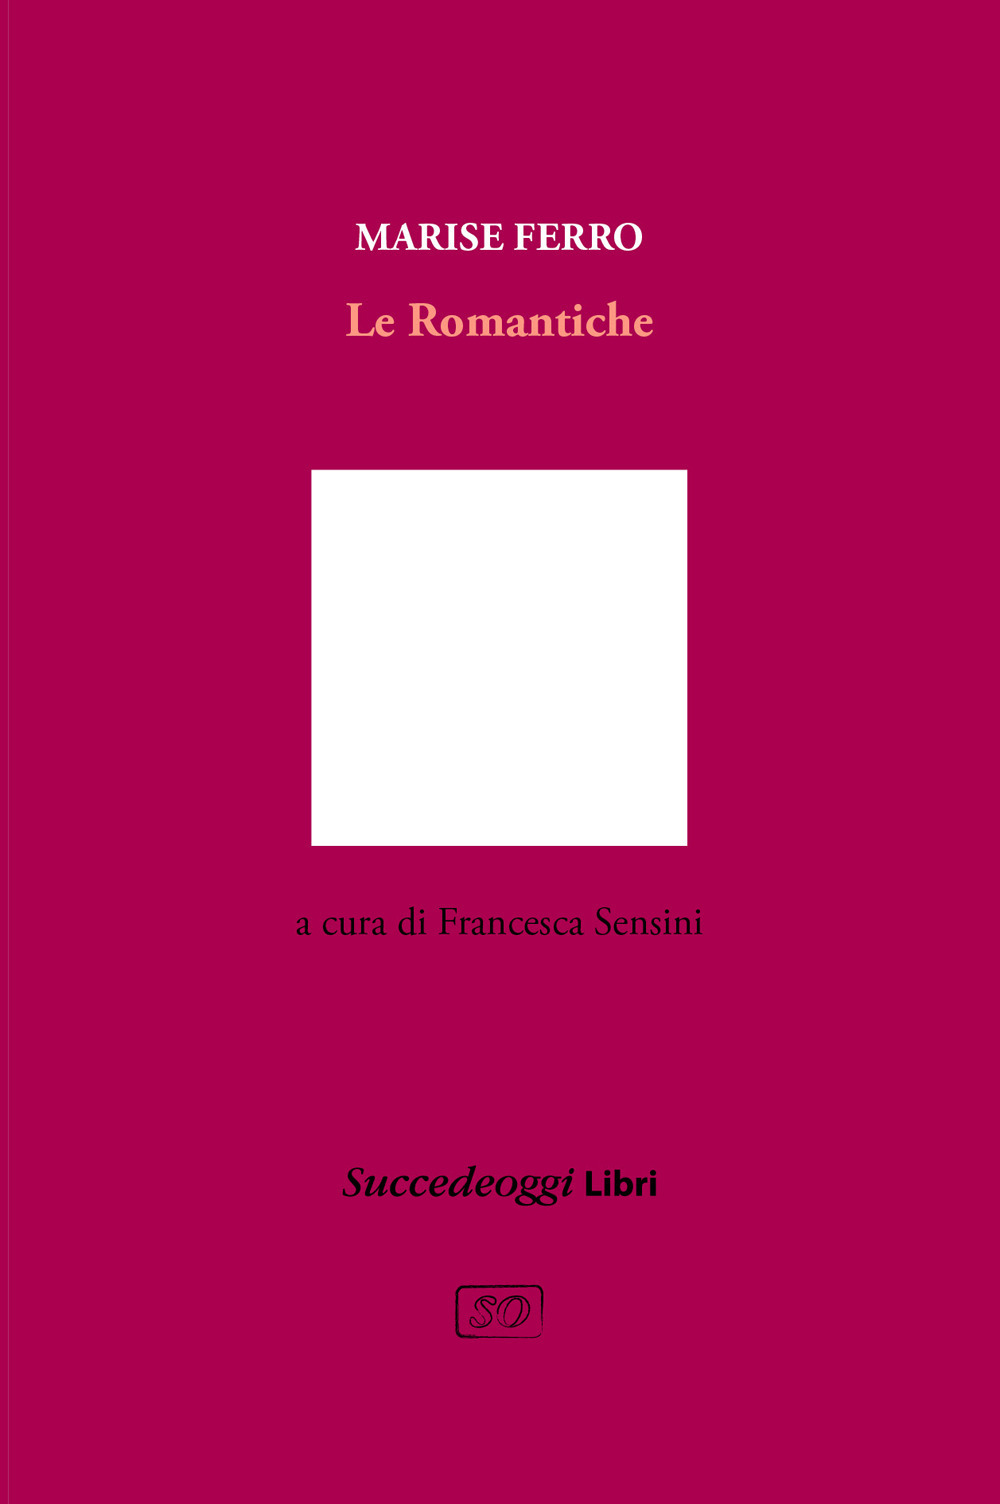 Libri Ferro Marise - Le Romantiche NUOVO SIGILLATO, EDIZIONE DEL 08/06/2021 SUBITO DISPONIBILE